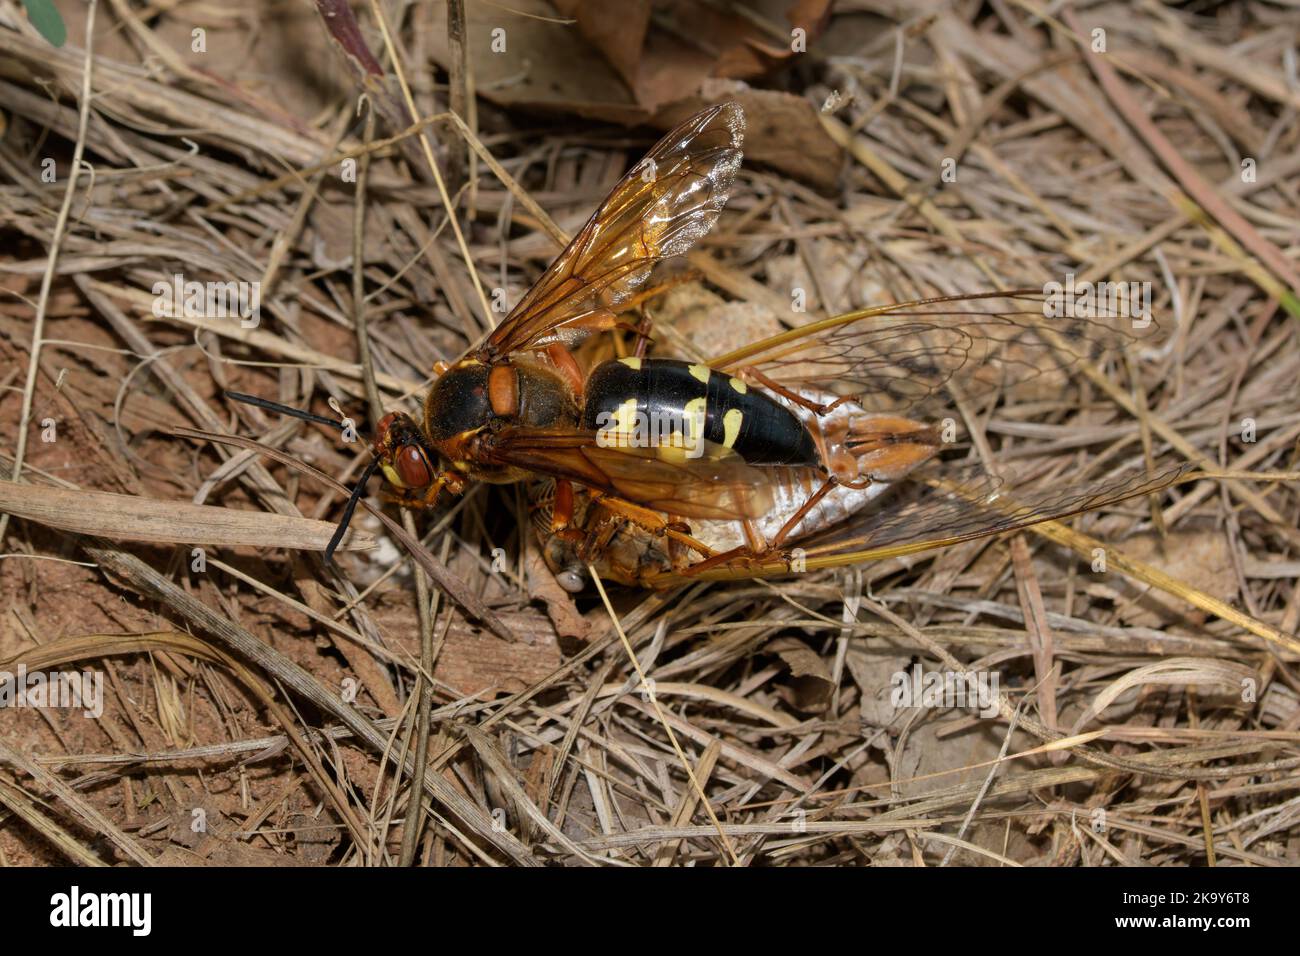 Vista superior de una avispa Cicada oriental arrastrando una Cicada en el suelo Foto de stock